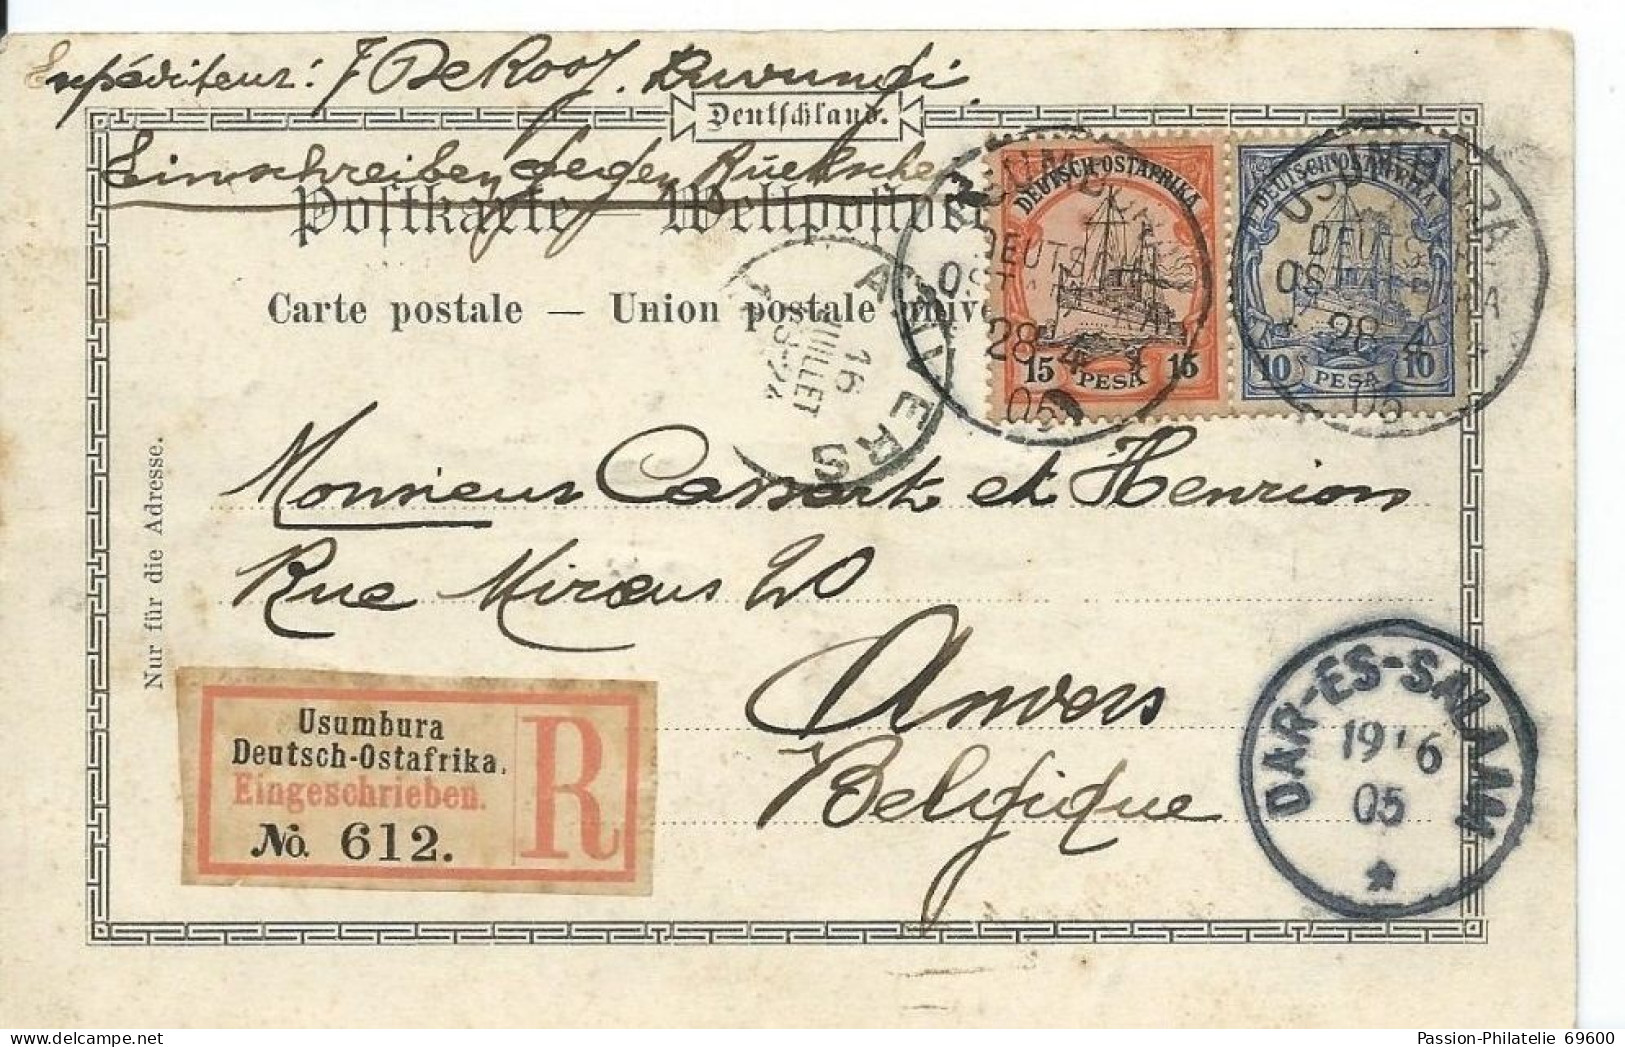 Militar Station Tabora Neue Boma - Circulé 1905 + Timbre Deutsch Ostafrika + Recommandé / Stamp Usumbura - Tansania